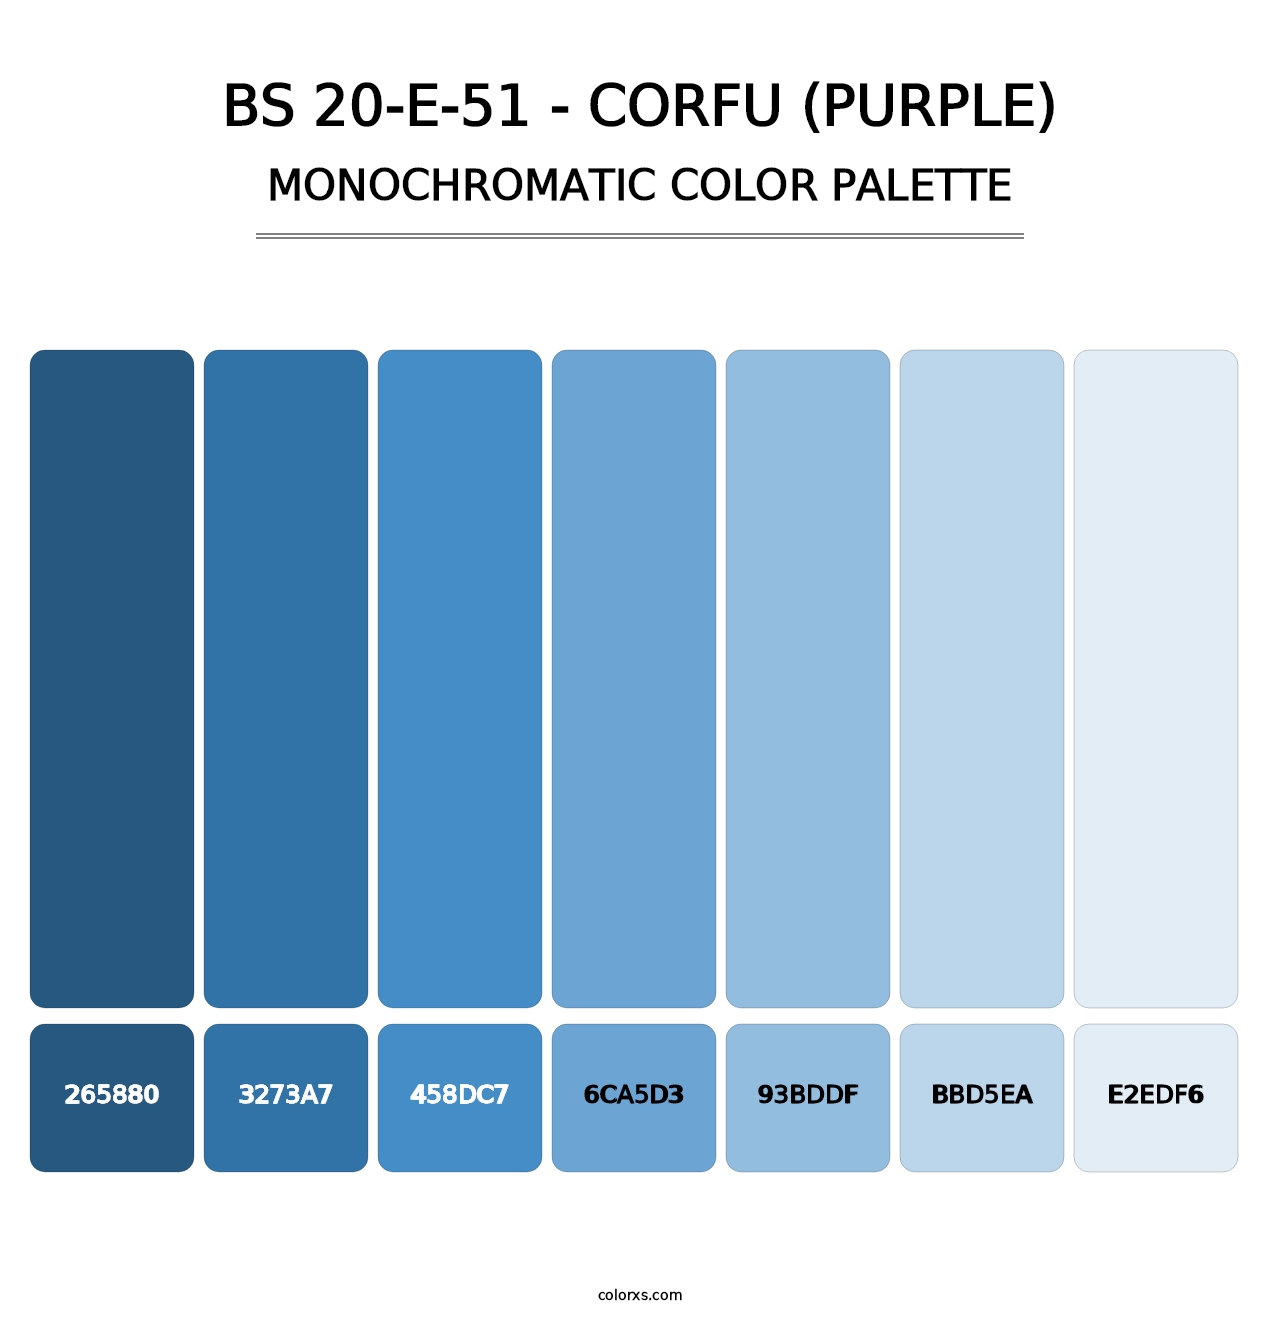 BS 20-E-51 - Corfu (Purple) - Monochromatic Color Palette